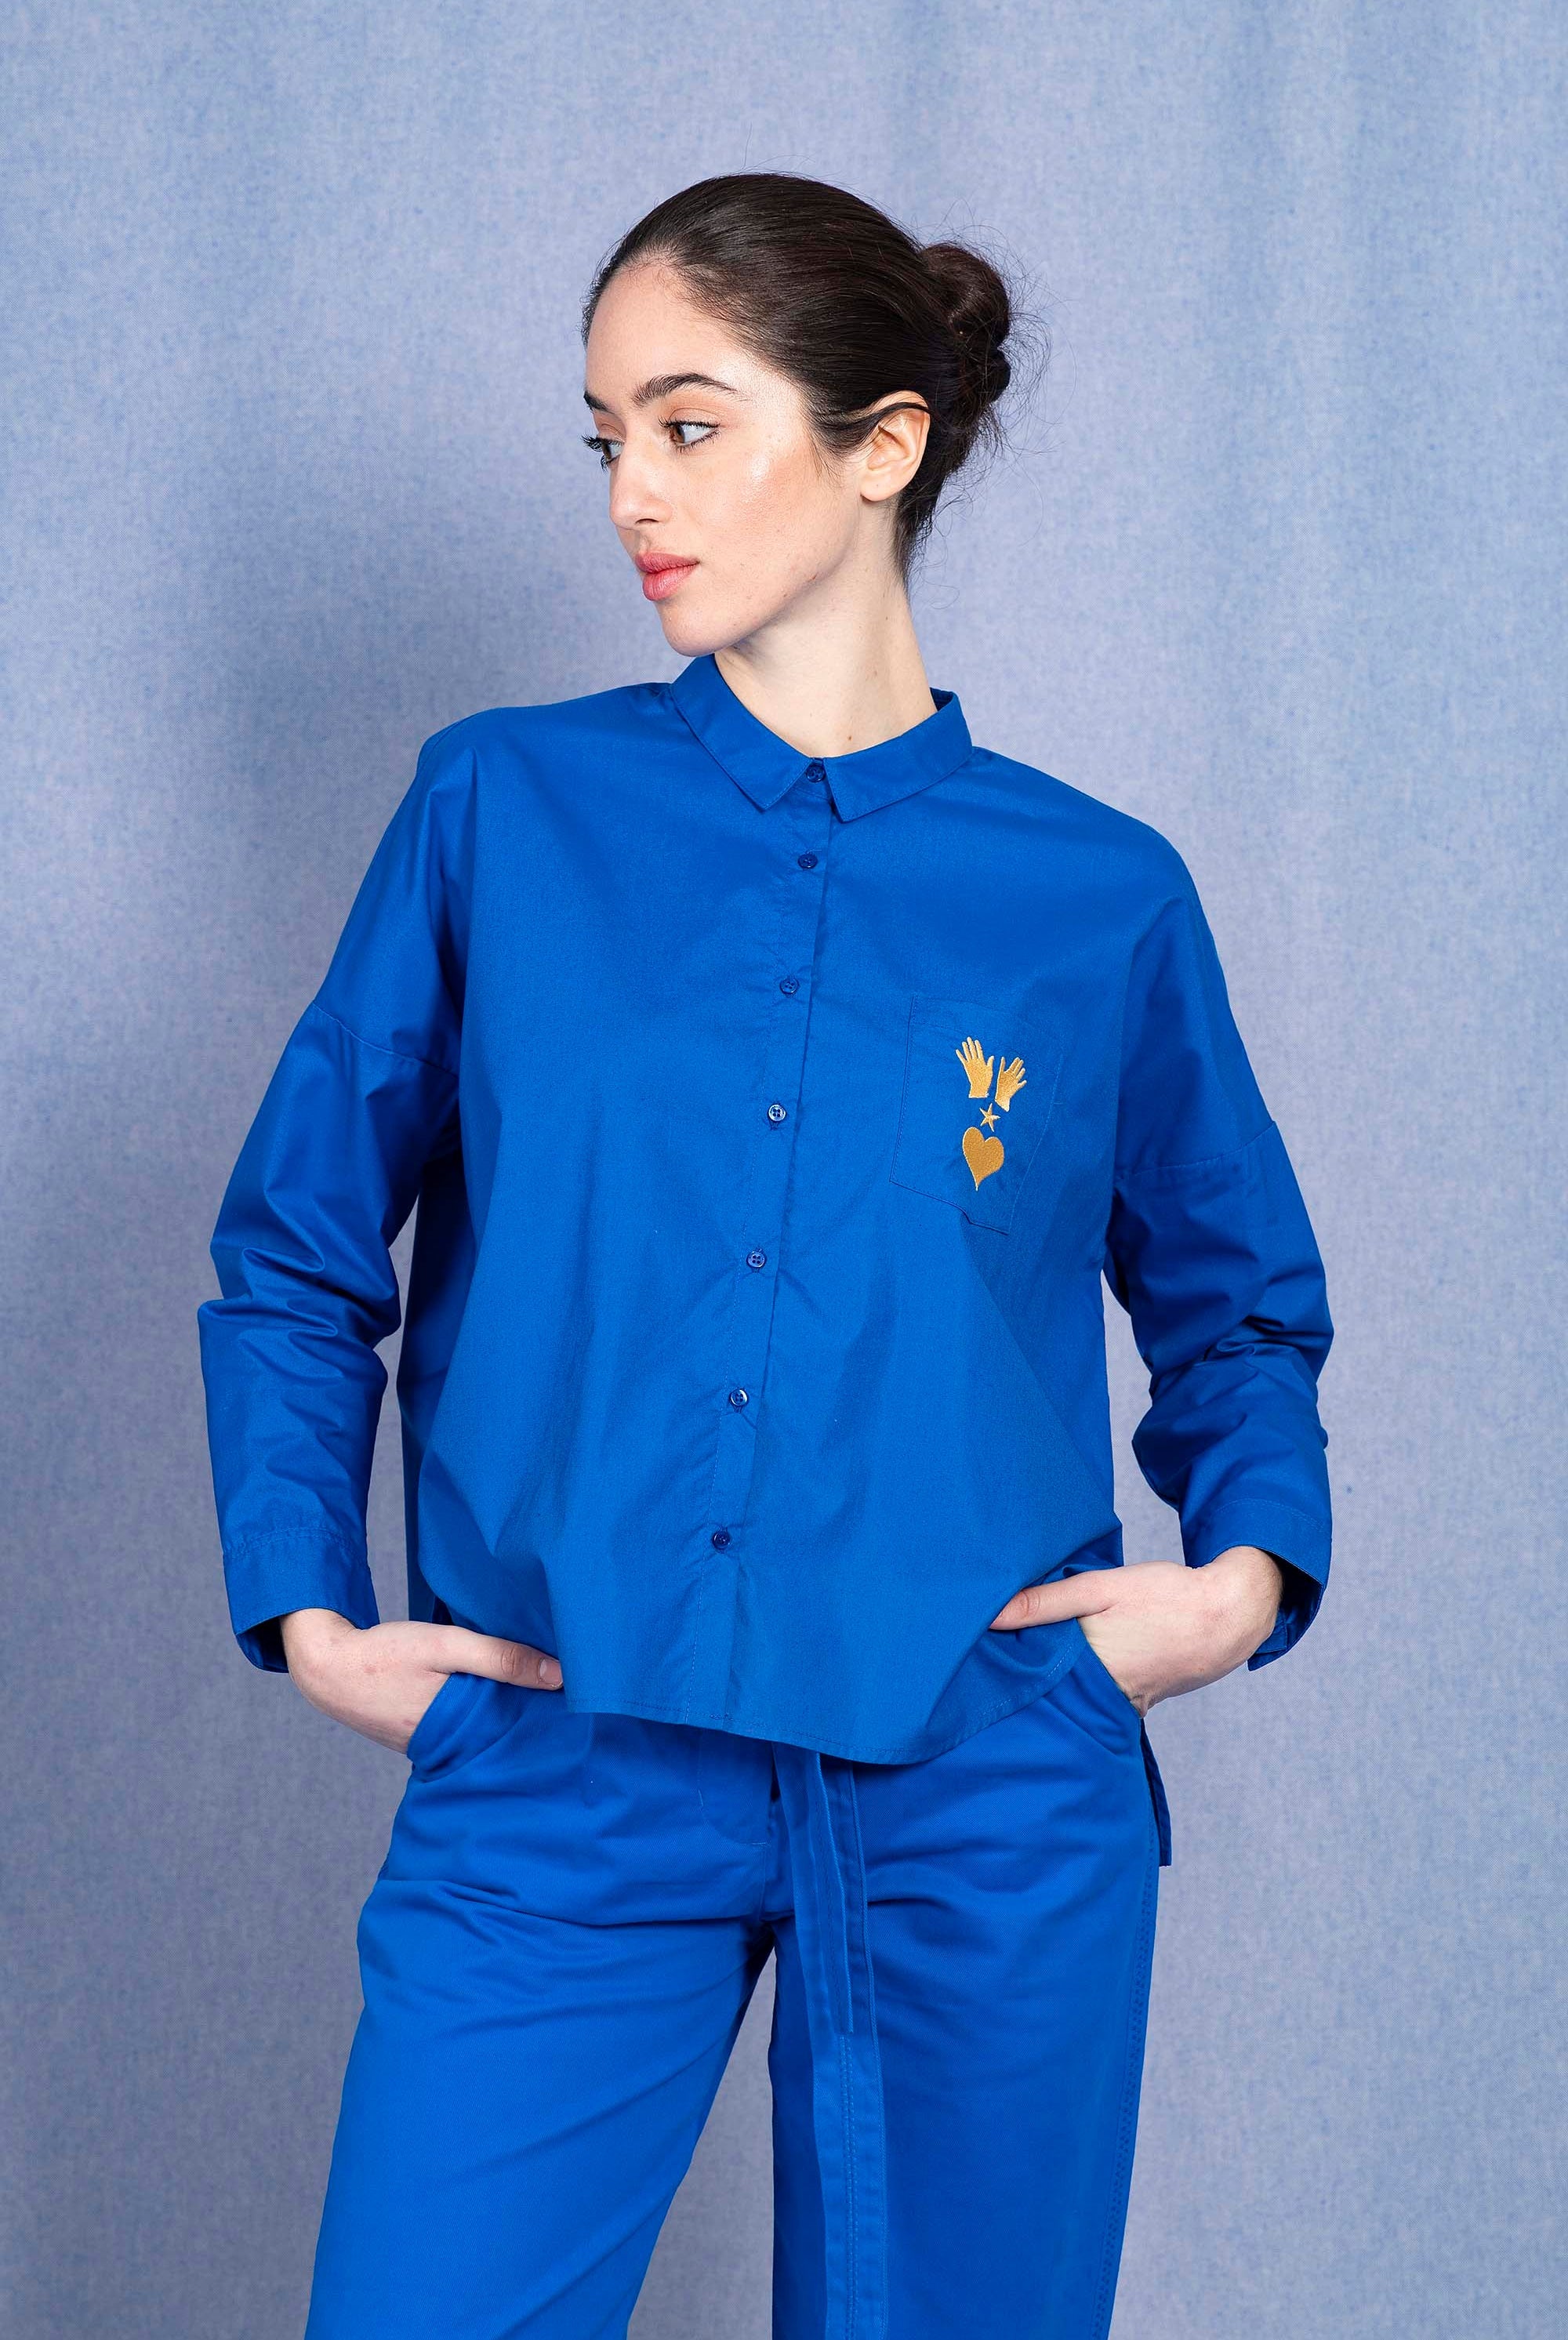 Chemise Alanis Bleu classique intemporelle, la chemise dessine la silhouette